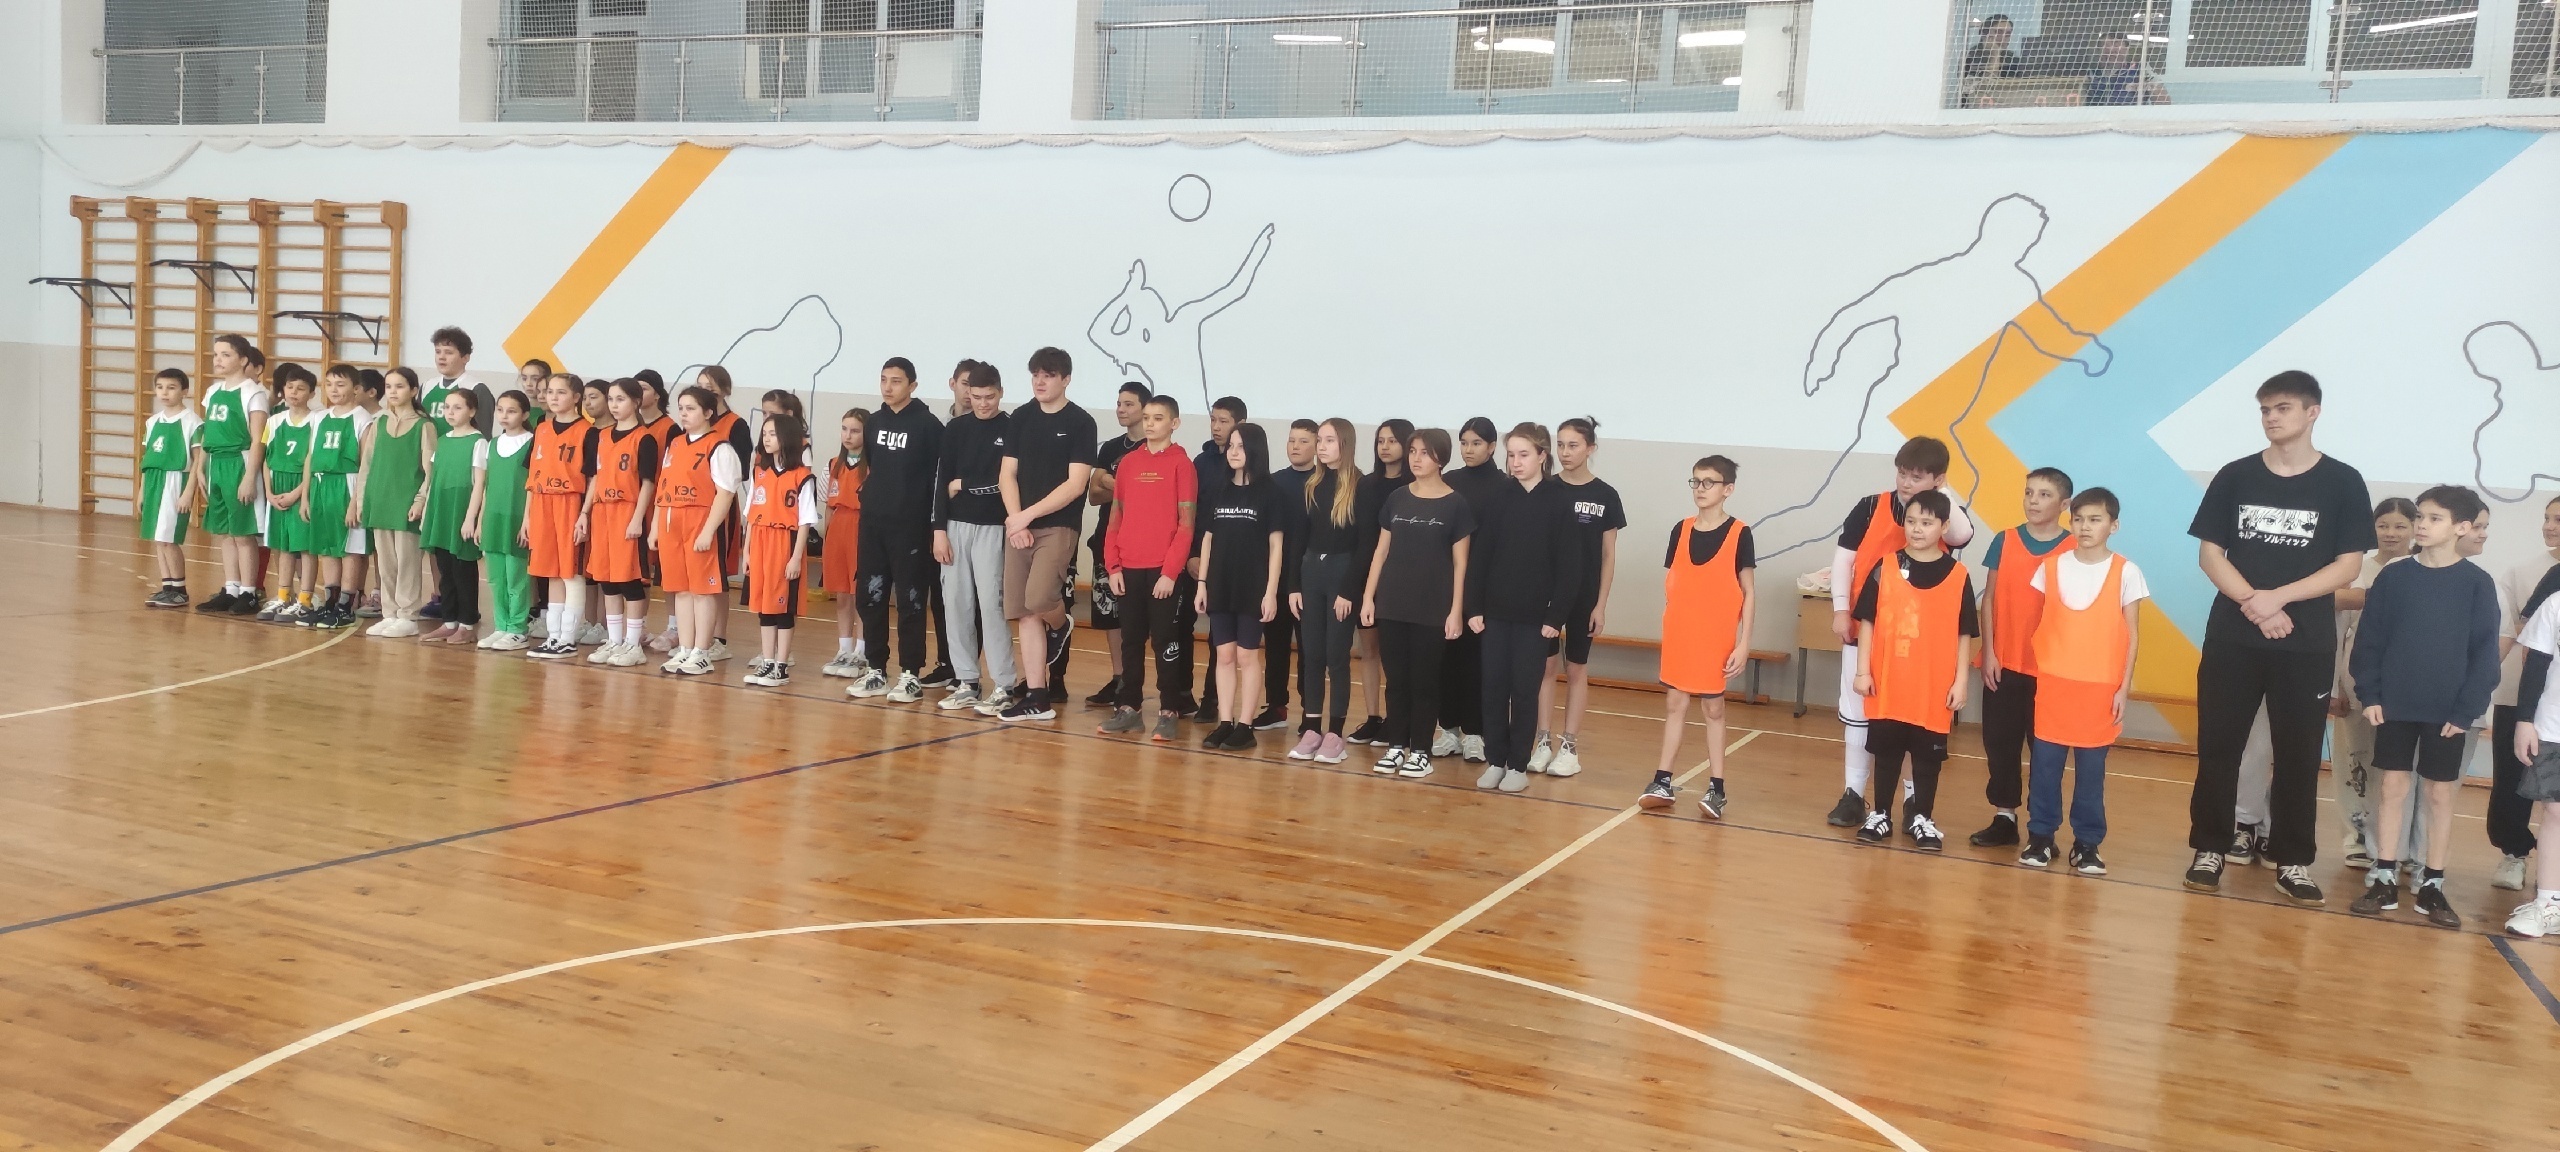 Сегодня в большом спортивном зале ДЮСШ прошли районные соревнования по баскетболу, посвящённые памяти Хафизова Айдара, погибшего в зоне СВО